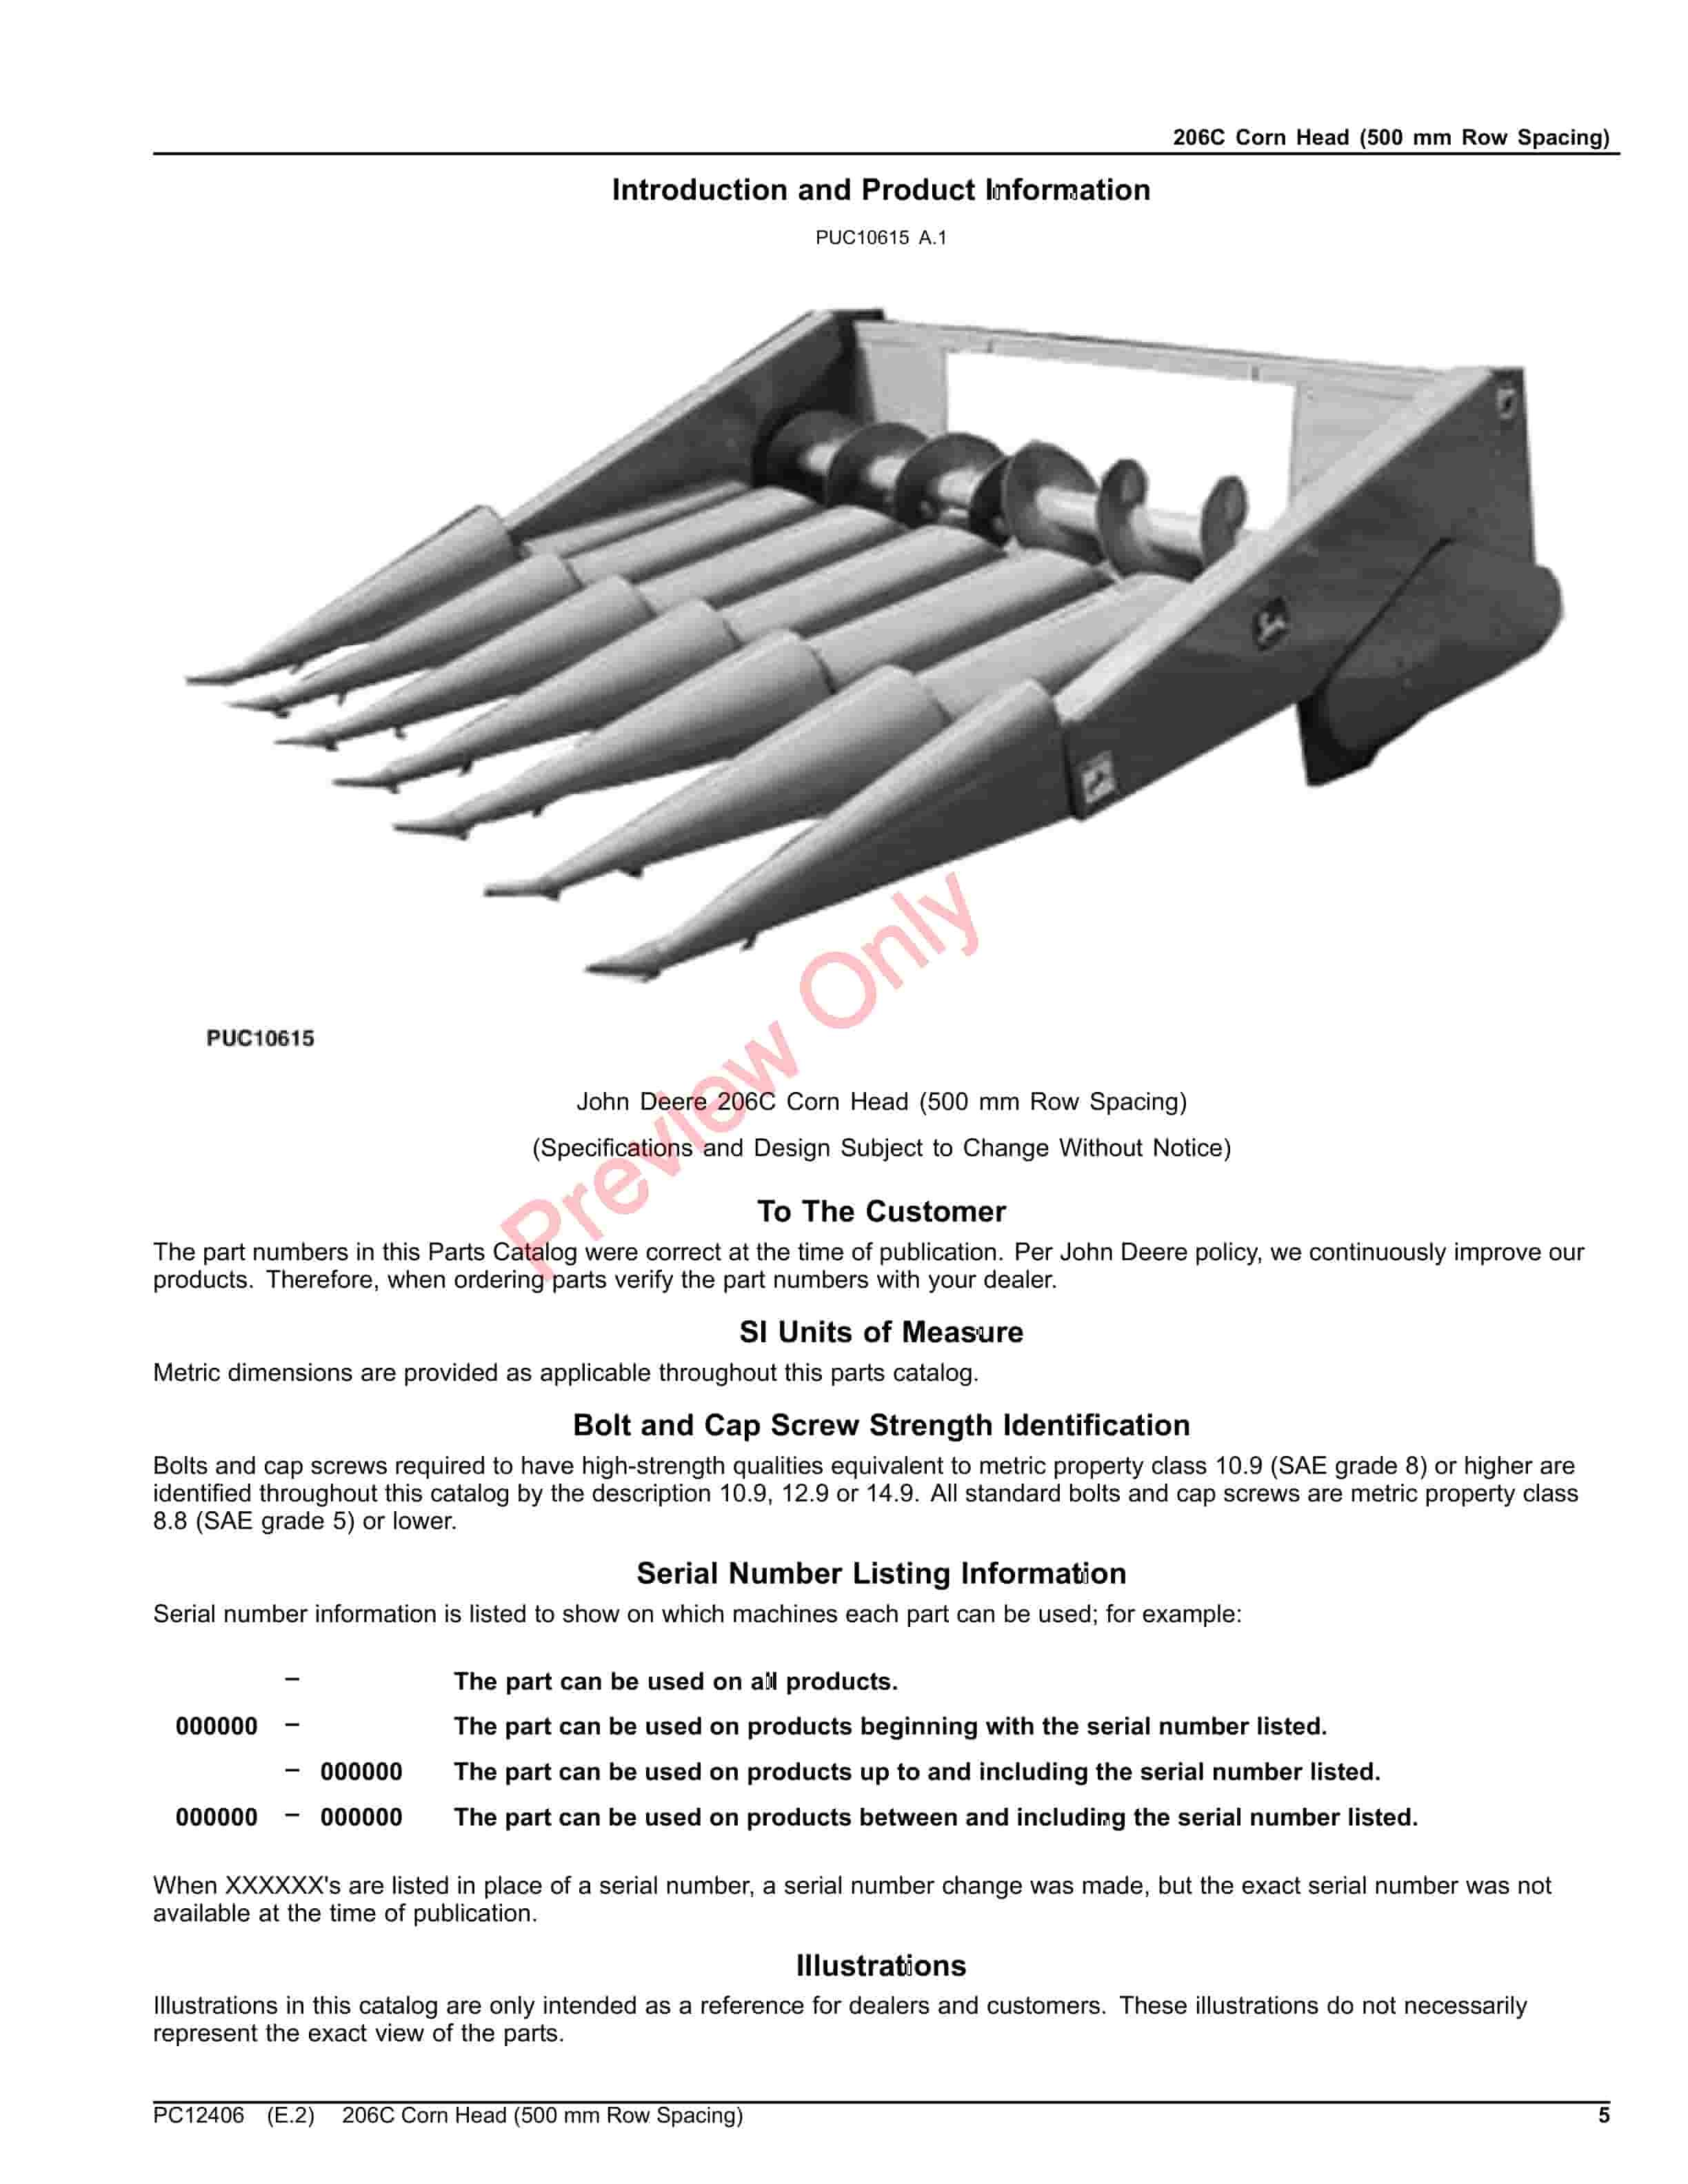 John Deere 206C Corn Head (500 mm Row Spacing) Parts Catalog PC12406 23JUL23-5